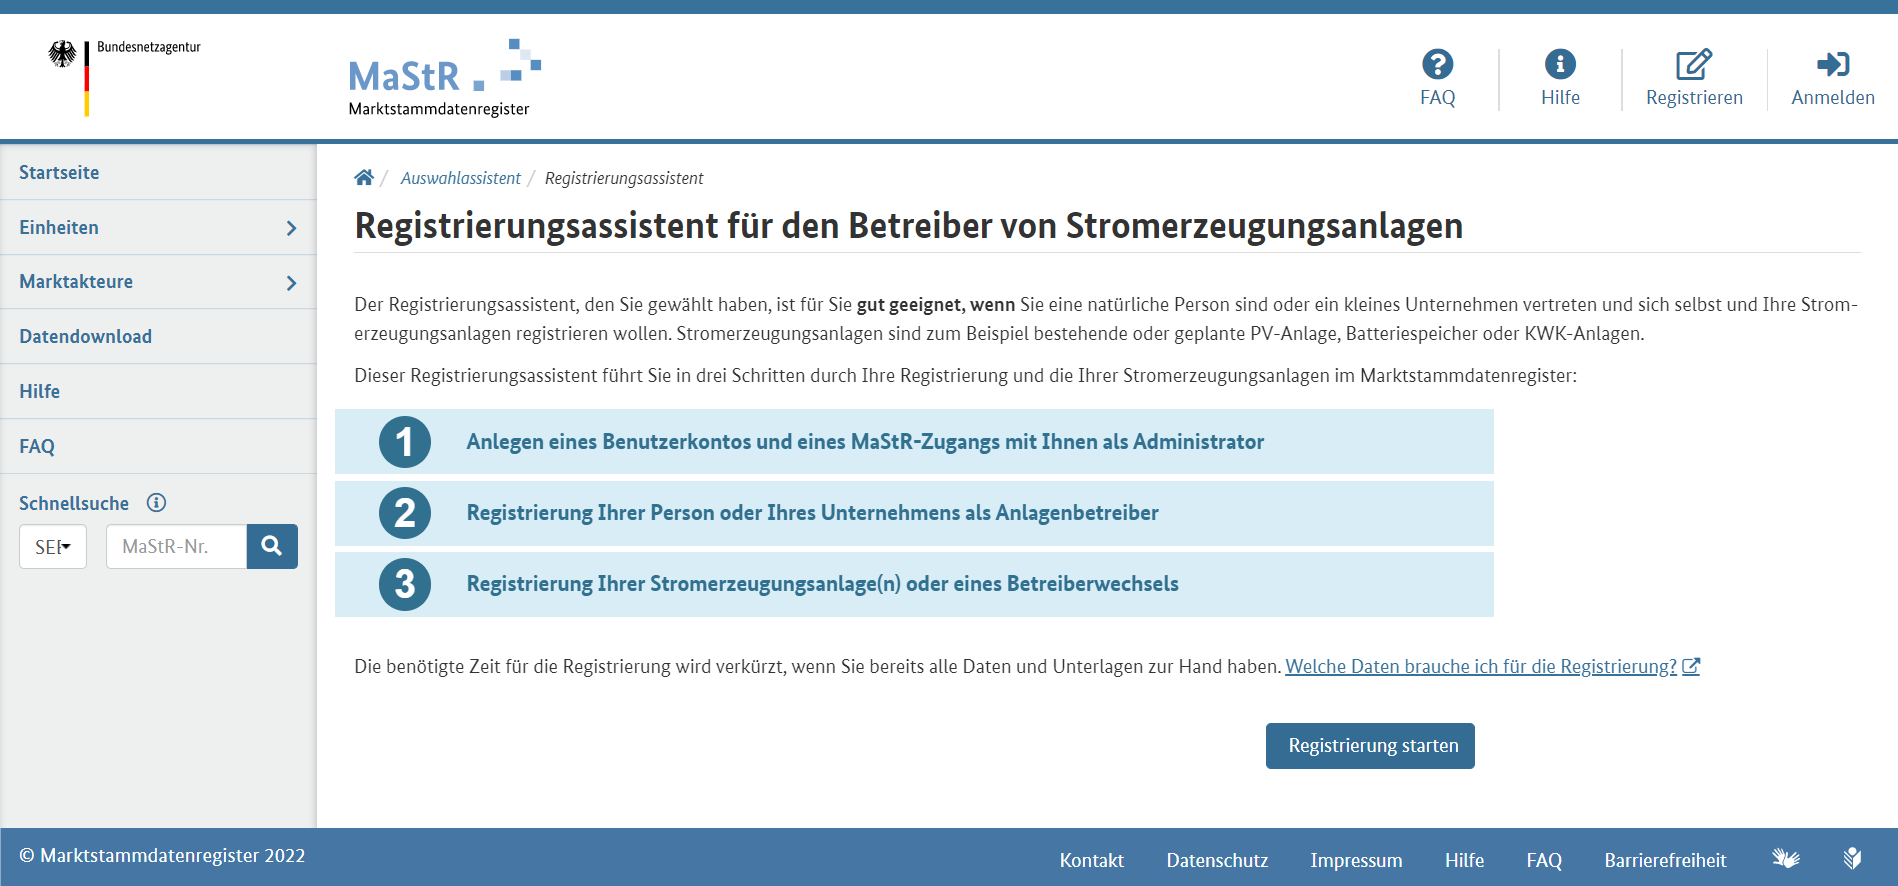 Balkonkraftwerk im Marktstammdatenregister anmelden - Screenshot der Website marktstammdatenregister.de (Bundesnetzagentur)